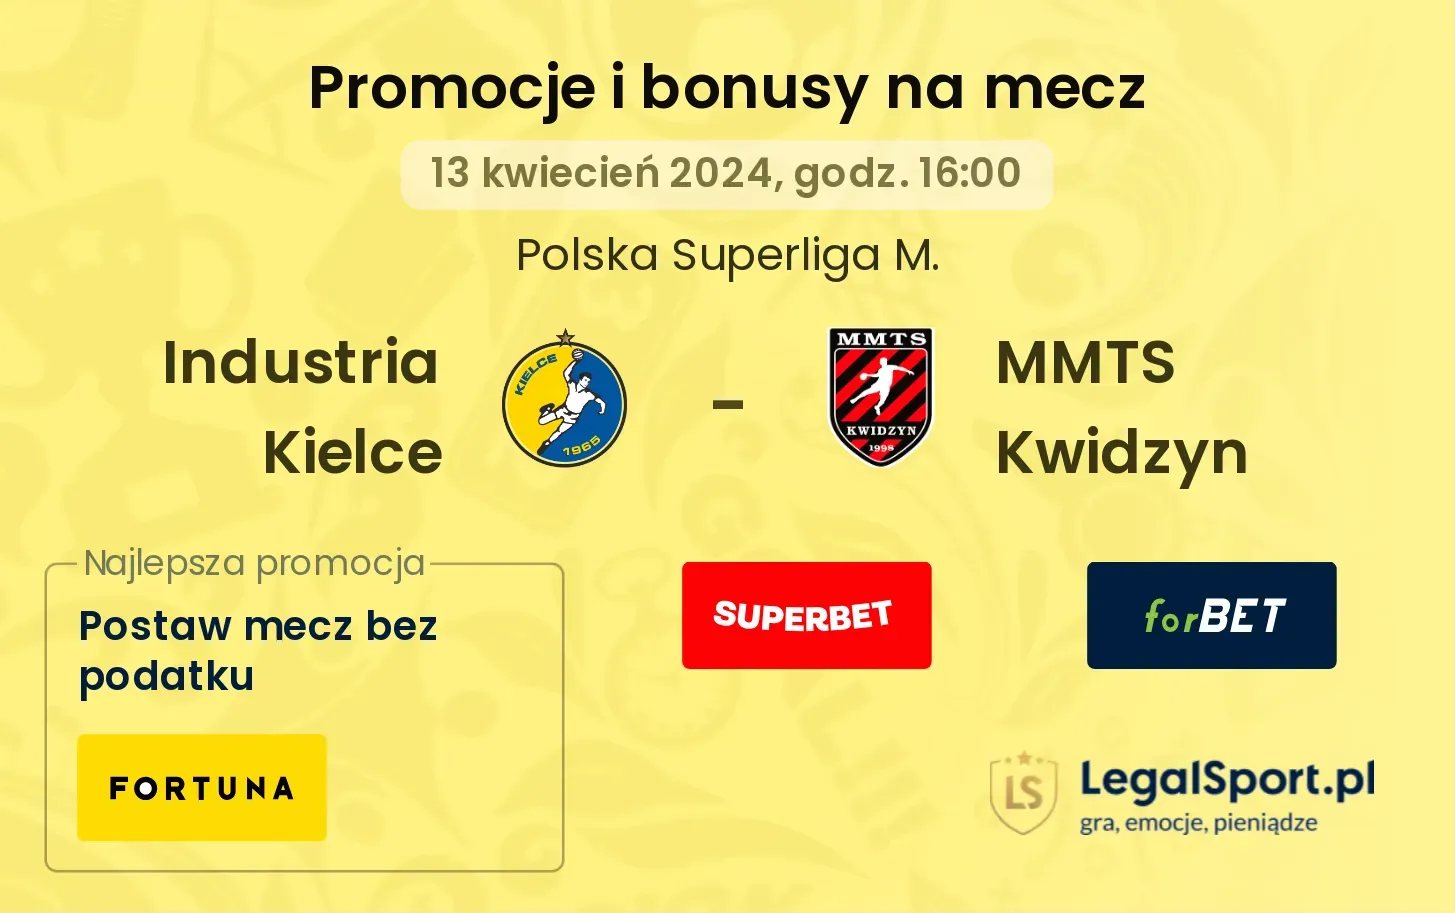 Industria Kielce - MMTS Kwidzyn promocje bonusy na mecz